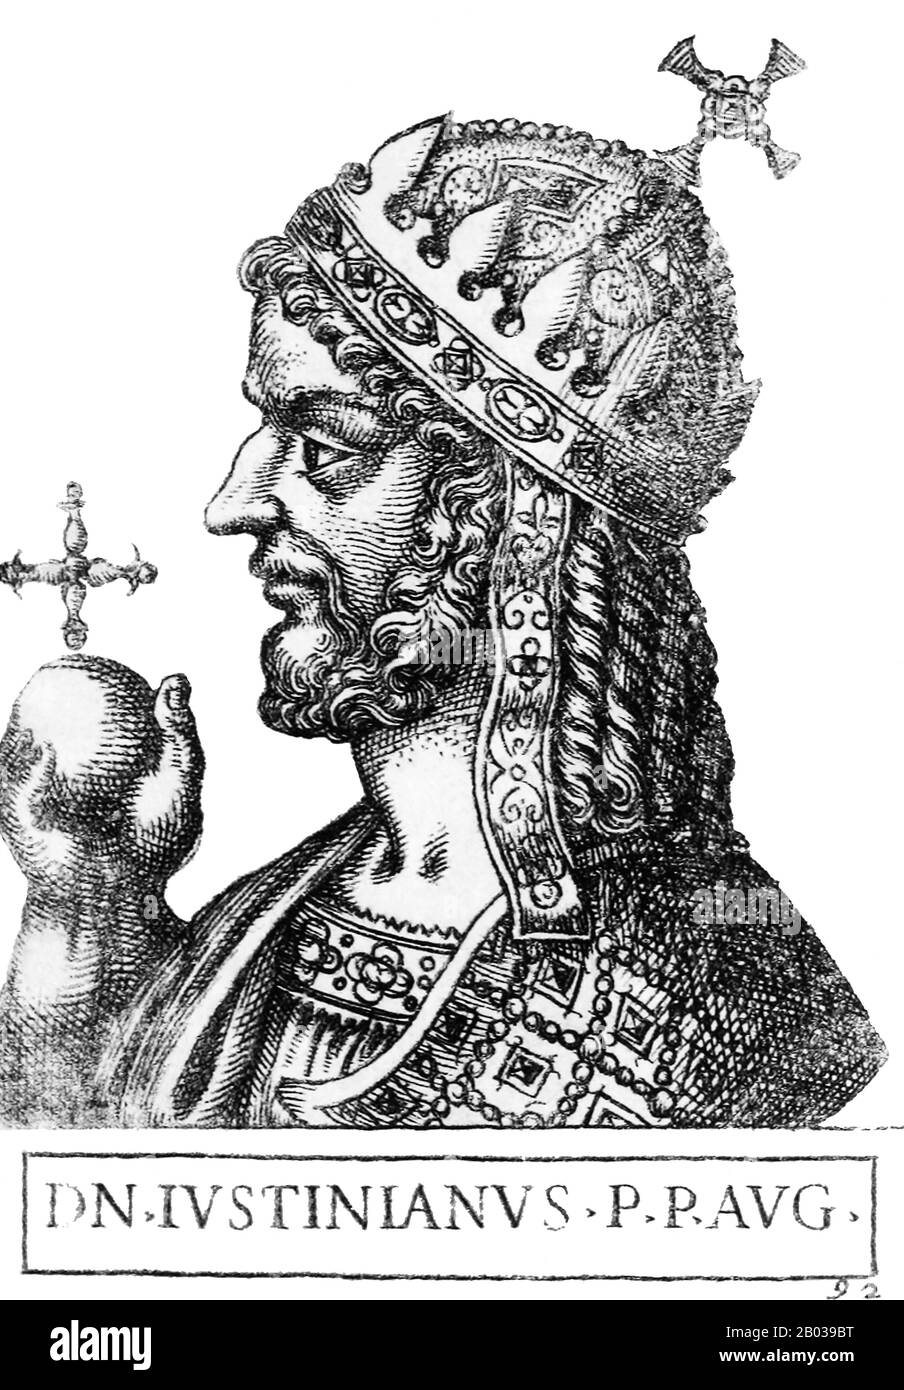 Giustiniano i (482 - 565), conosciuto anche come Giustiniano il Grande o San Giustiniano il Grande, era il nipote dell'imperatore Giustino i, originariamente nato da una famiglia contadina a Tauresium. Giustino, prima di diventare imperatore, adottò Giustiniano e lo sollevò a Costantinopoli. Giustiniano servì nella Guardia Imperiale, gli Excubitori, proprio come aveva fatto suo zio, e fu reso imperatore associato nel 527 prima di diventare unico imperatore quando Giustino morì nello stesso anno. Giustiniano era ambizioso e intelligente, e cercò di ravvivare la grandezza dell'impero, progettando la riconquista della metà occidentale dell'Impero Romano in quella che era Foto Stock